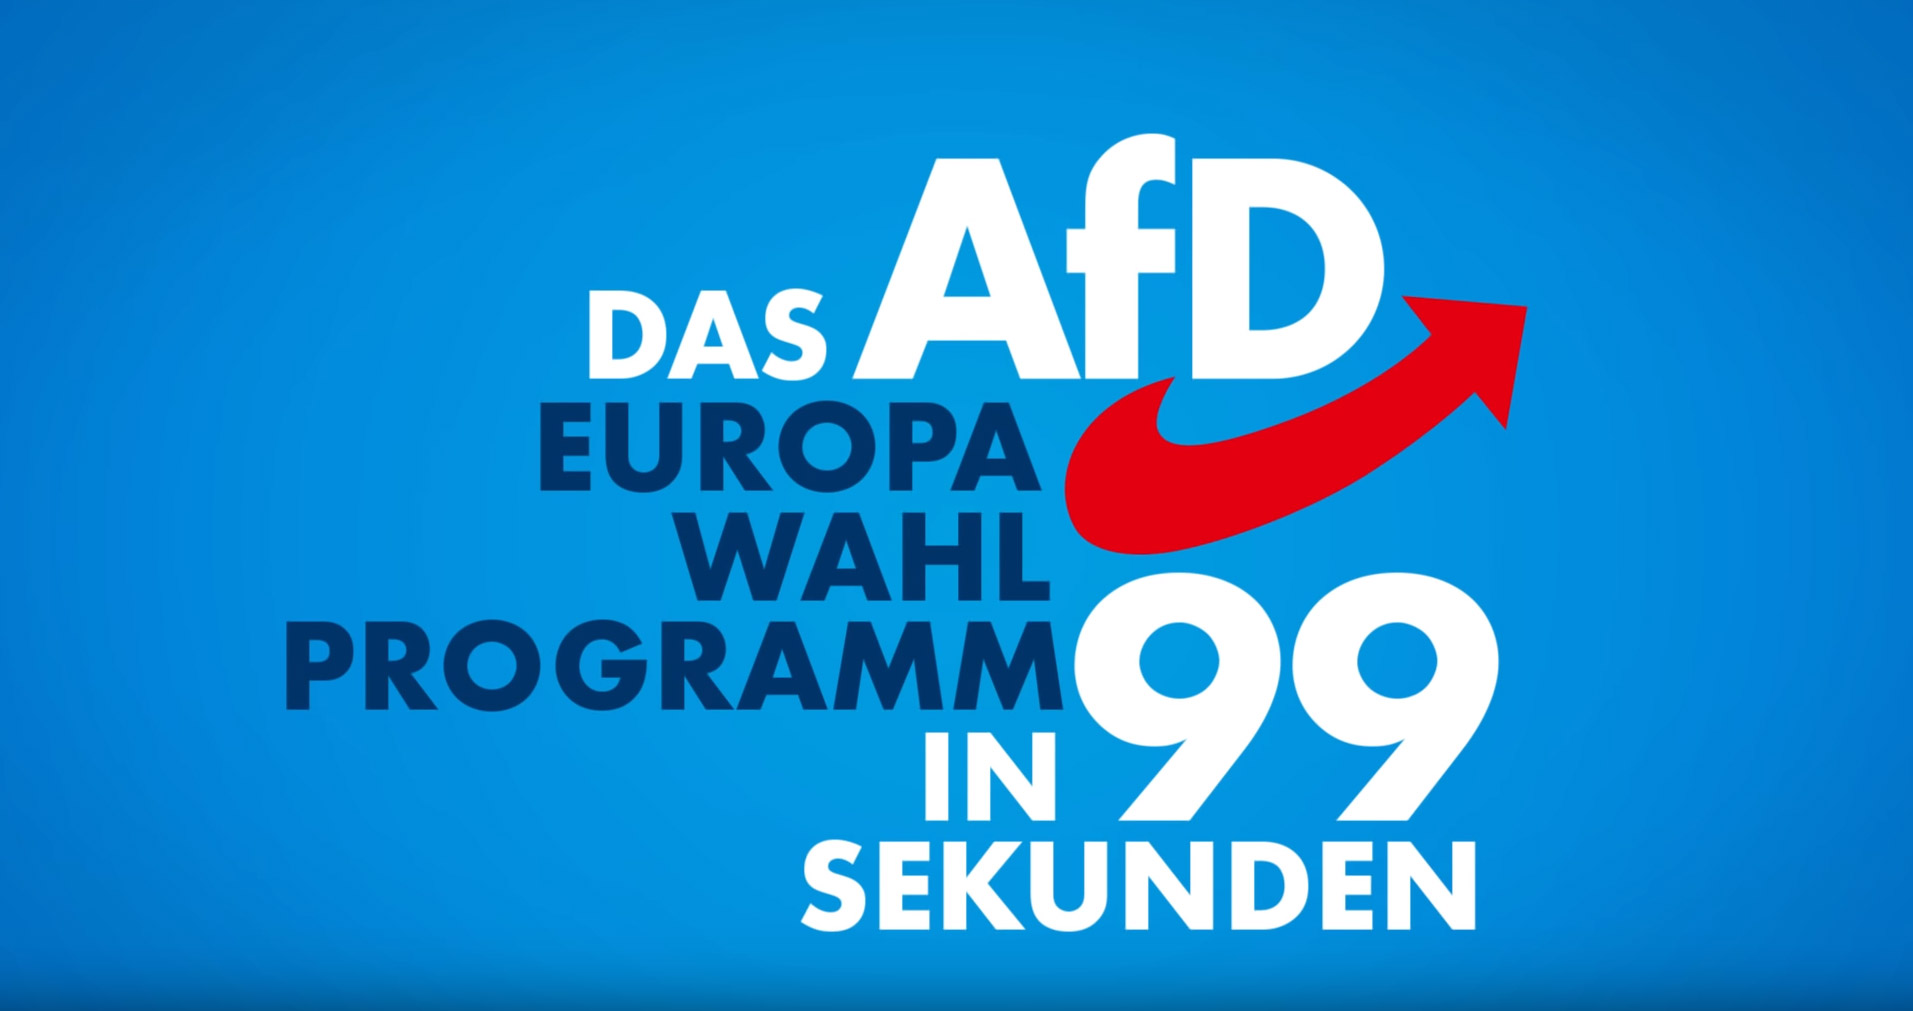 Das AfD EU-Programm in 99 Sekunden